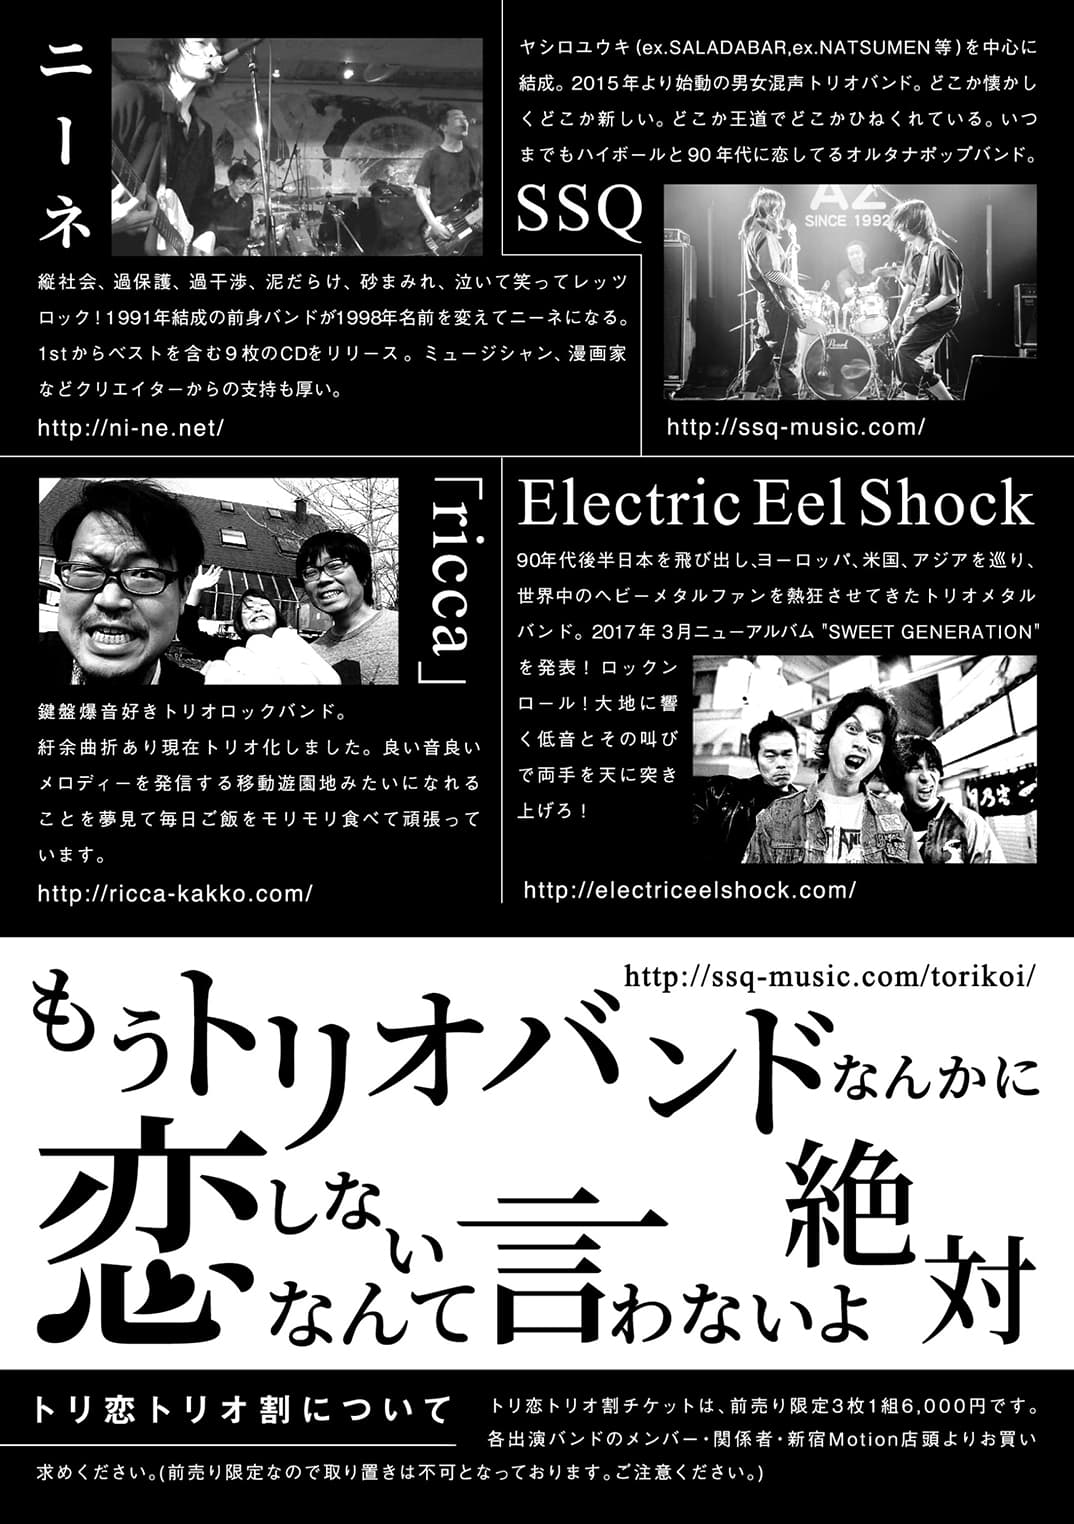 2017/10/14@新宿Motion:トリ恋:ニーネ,SSQ,「ricca」,Electric Eel Shock